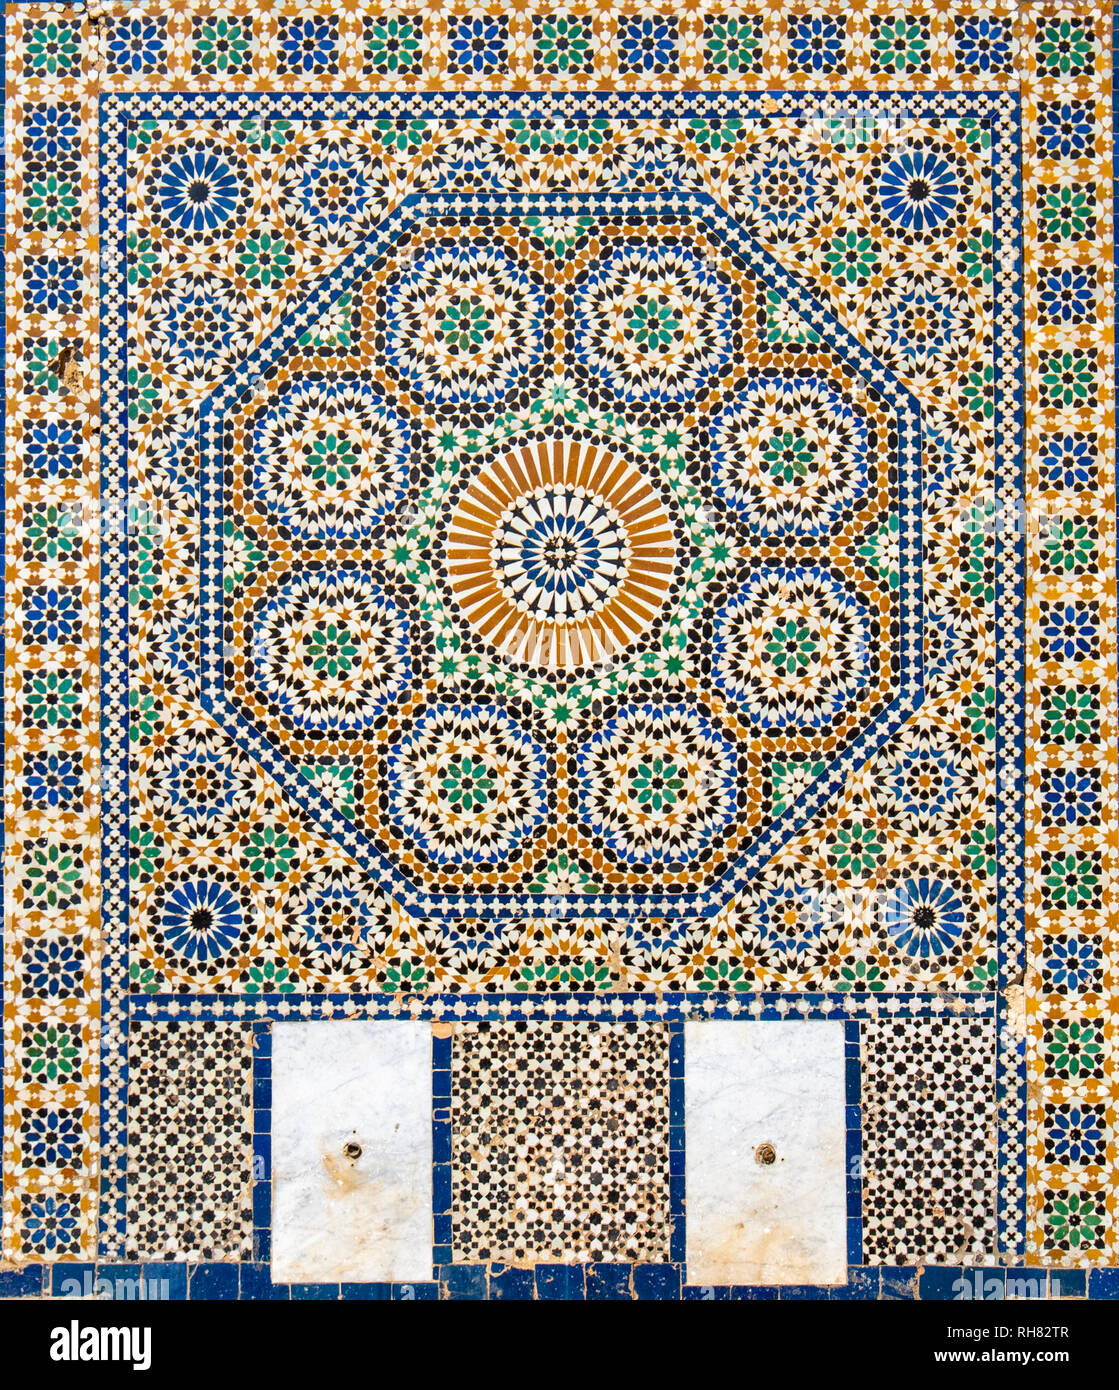 Arabisch floral nahtlose Muster - der traditionellen islamischen Hintergrund. Dekoratives Element - Traditionelle marokkanische Muster, bunten Mosaikfliesen Stockfoto